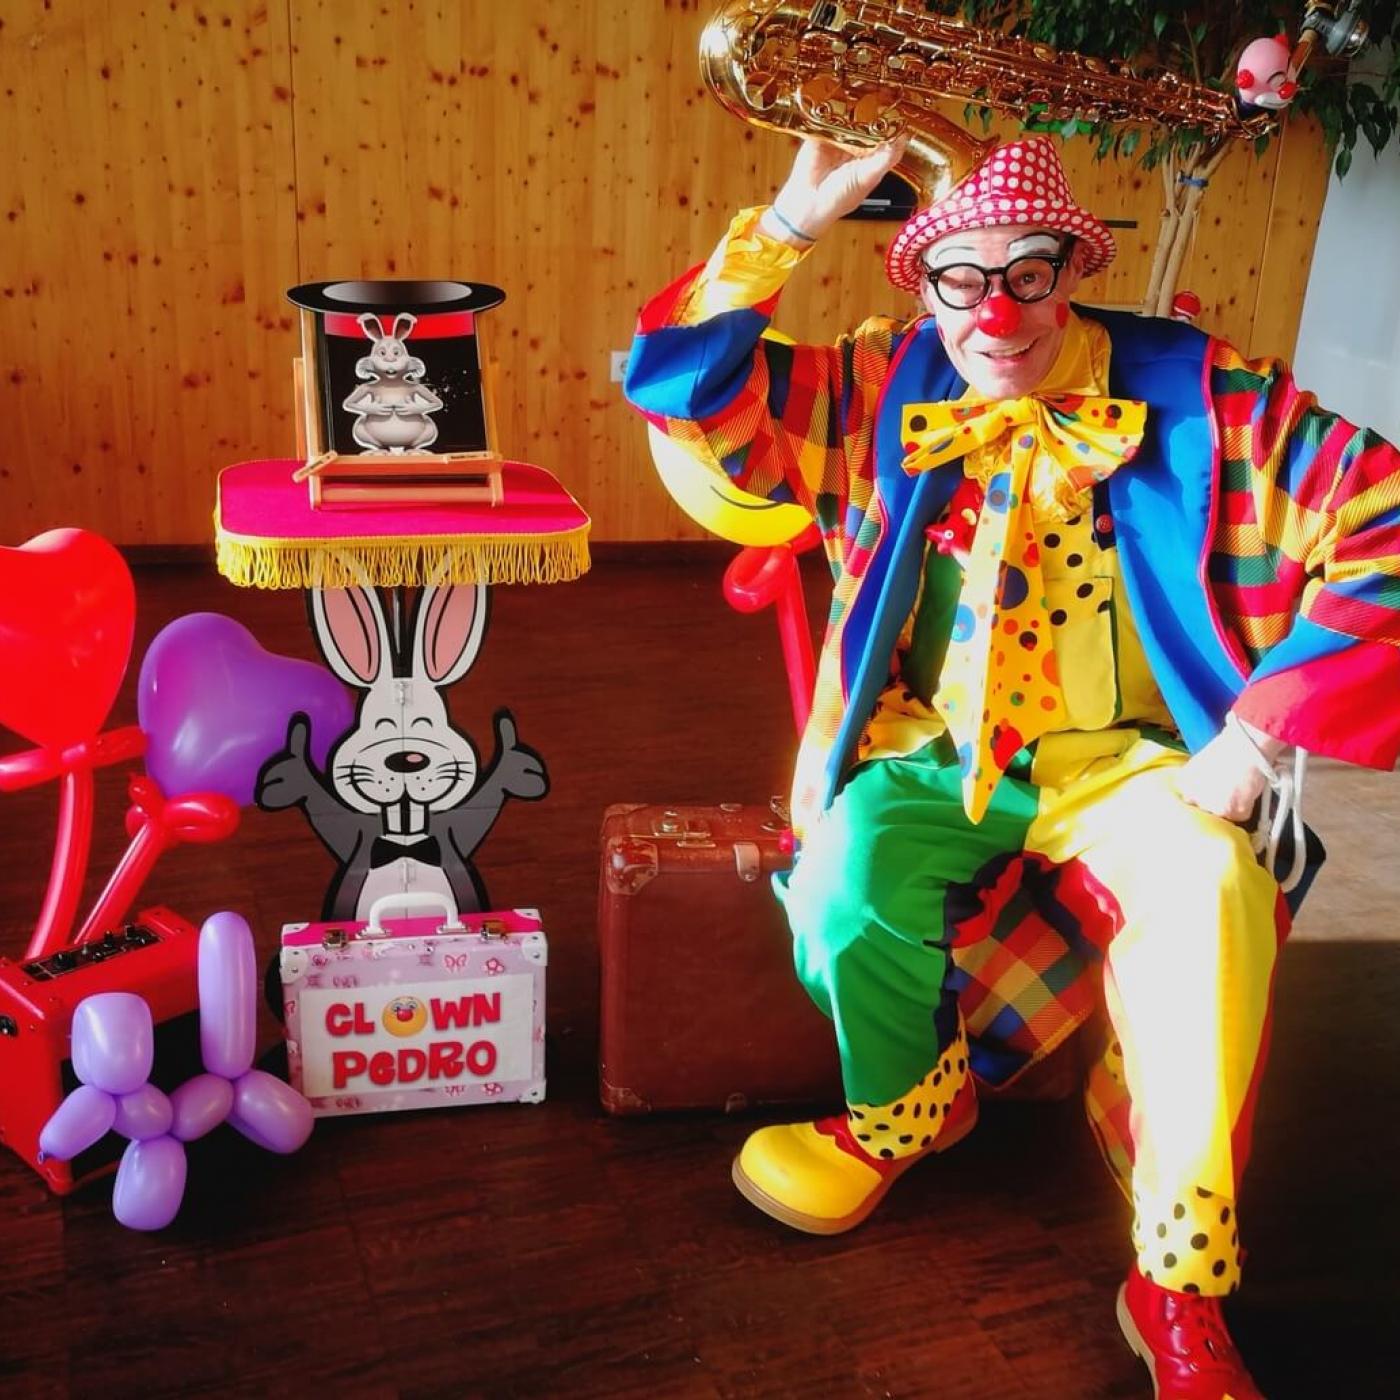 Clown Pedro Zaubershow für Kindergeburtstage mit Ballontieren und viel Spaß und Lachen.